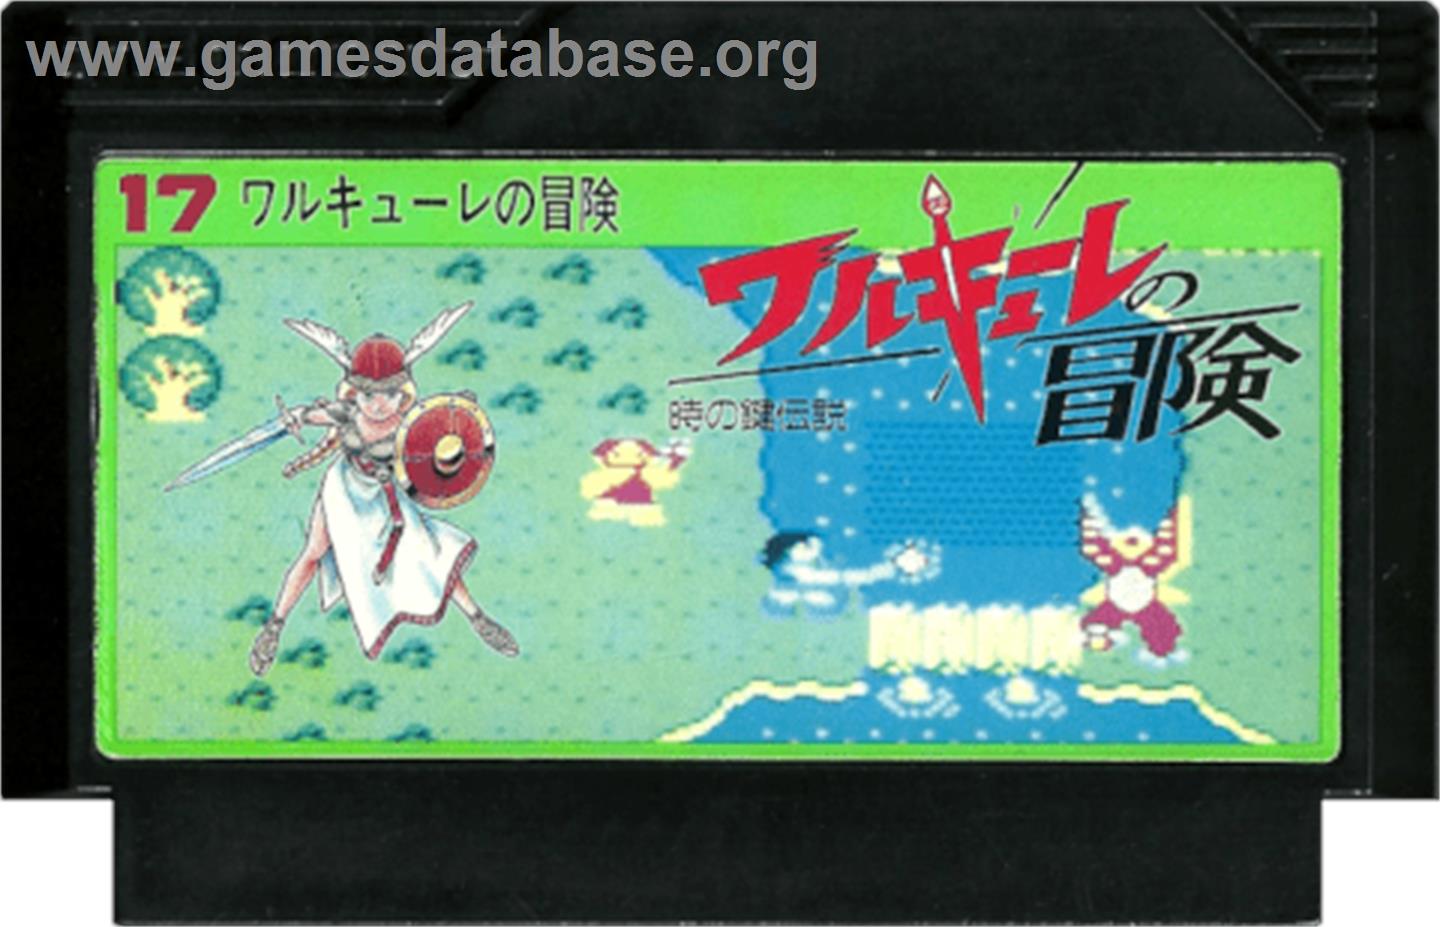 Valkyrie no Bouken: Toki no Kagi Densetsu - Nintendo NES - Artwork - Cartridge